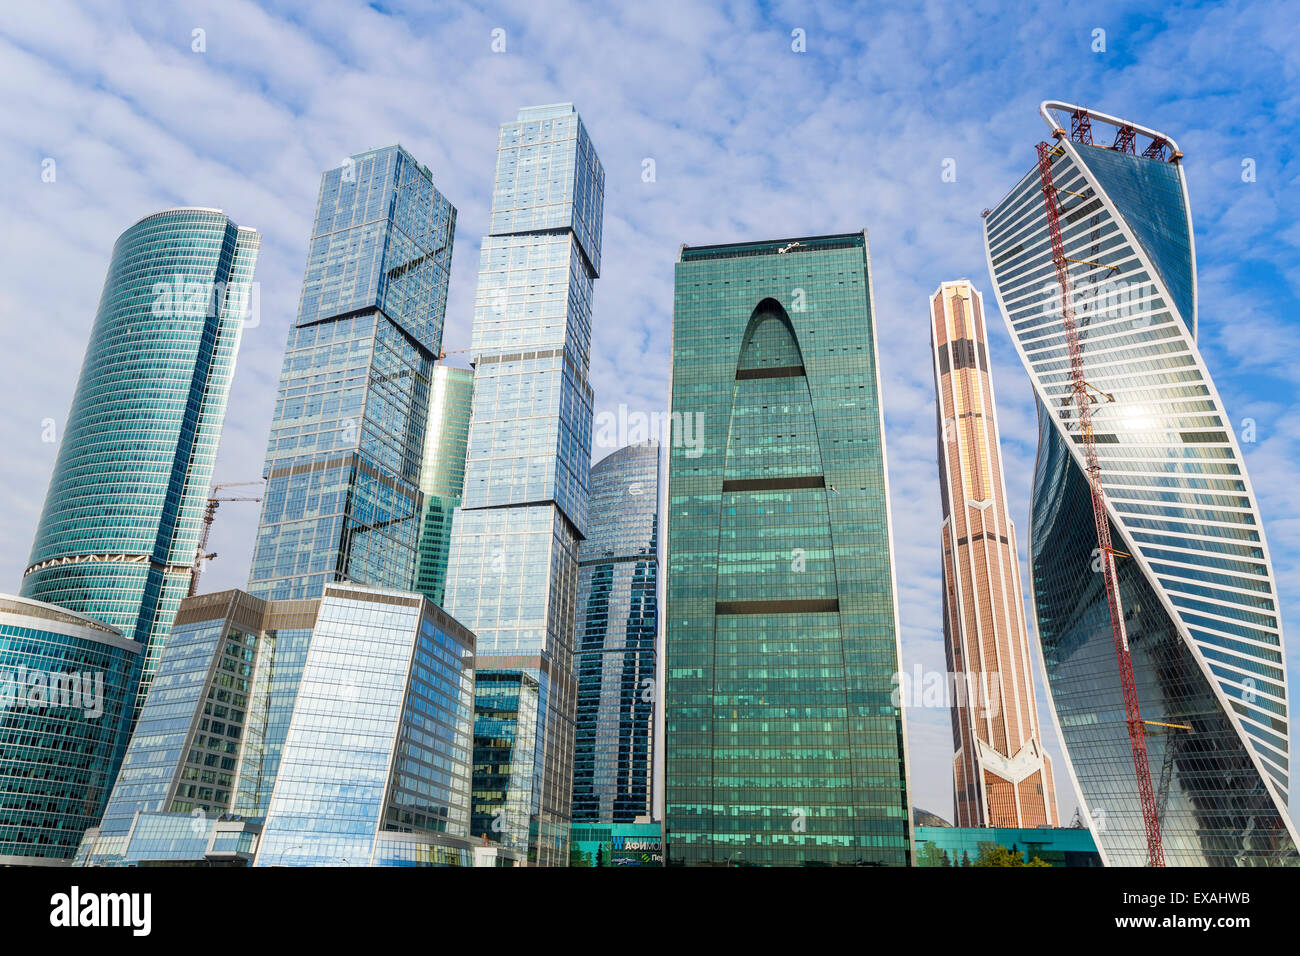 Gratte-ciel moderne de la Moscow-City International Business et finances développement, Moscou, Russie, Europe Banque D'Images